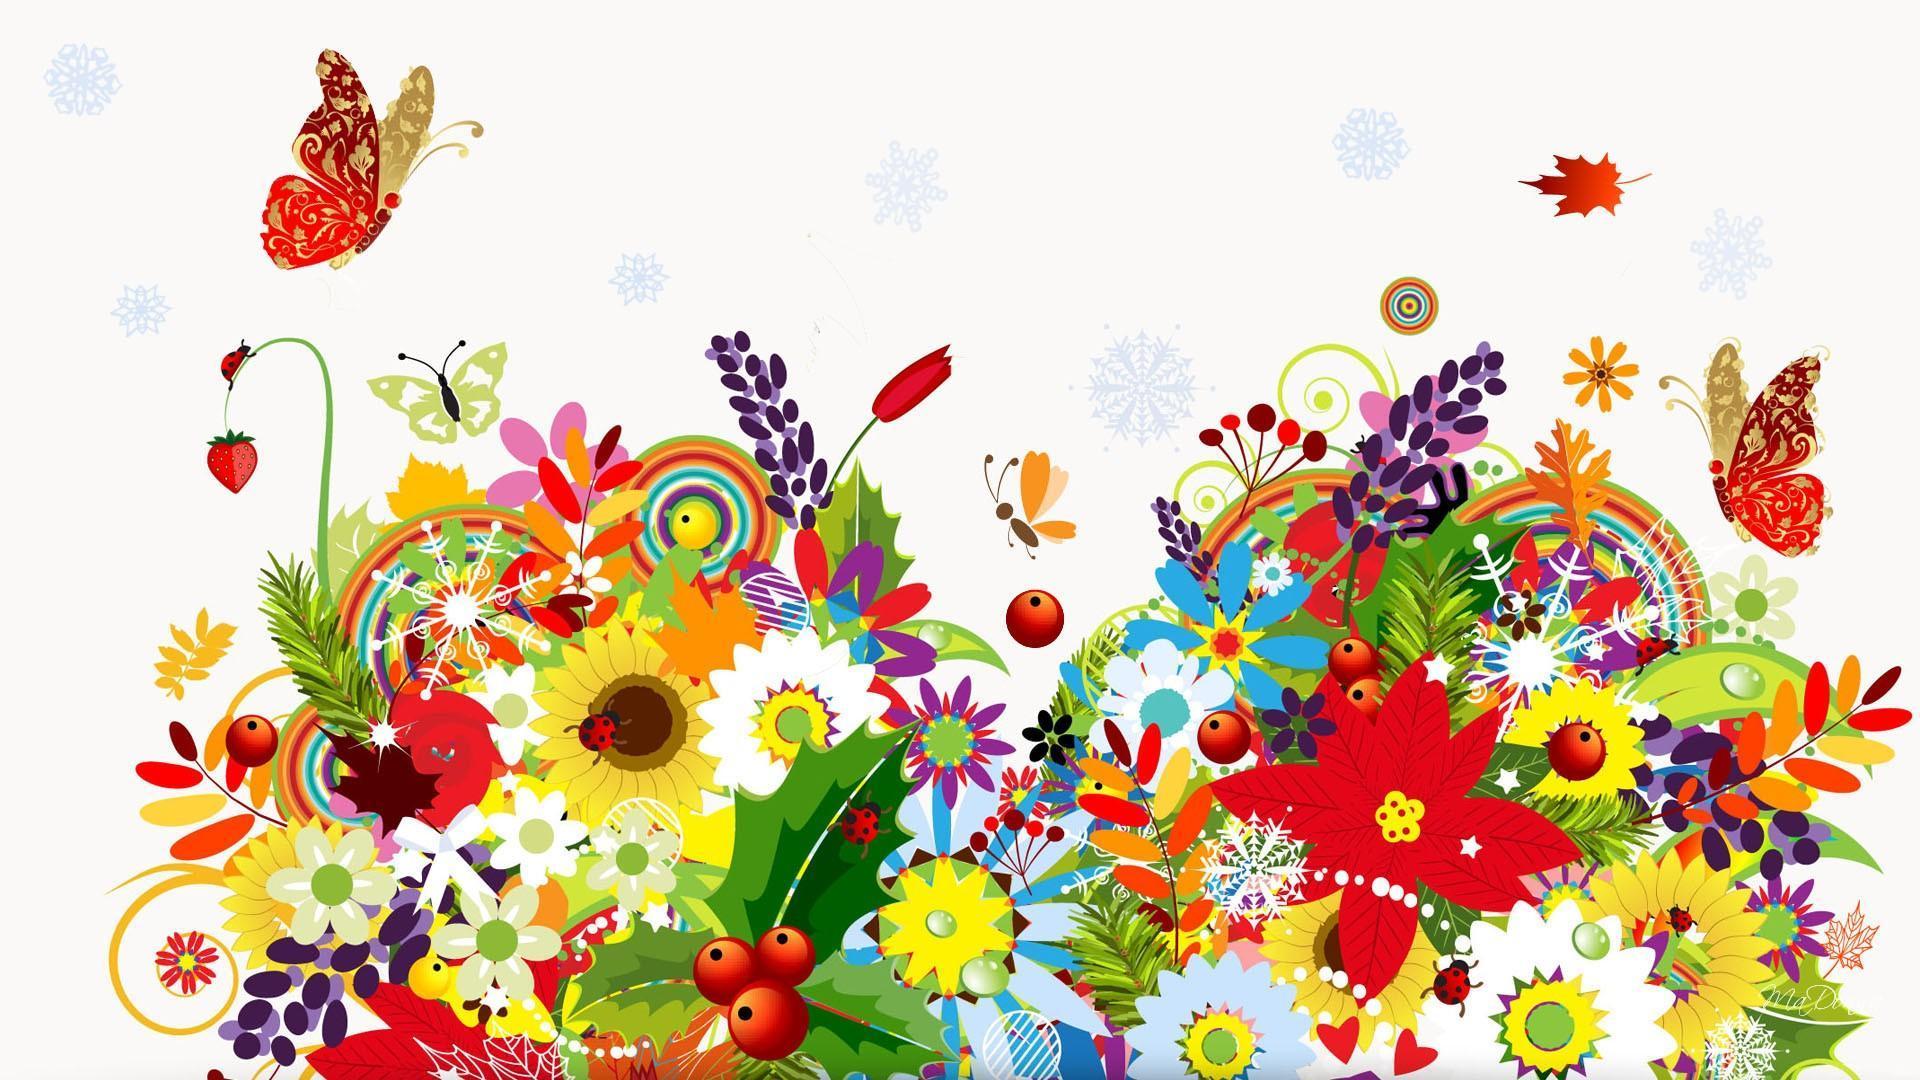 Spring Summer Fall Winter HD desktop wallpaper, Widescreen, High Definition